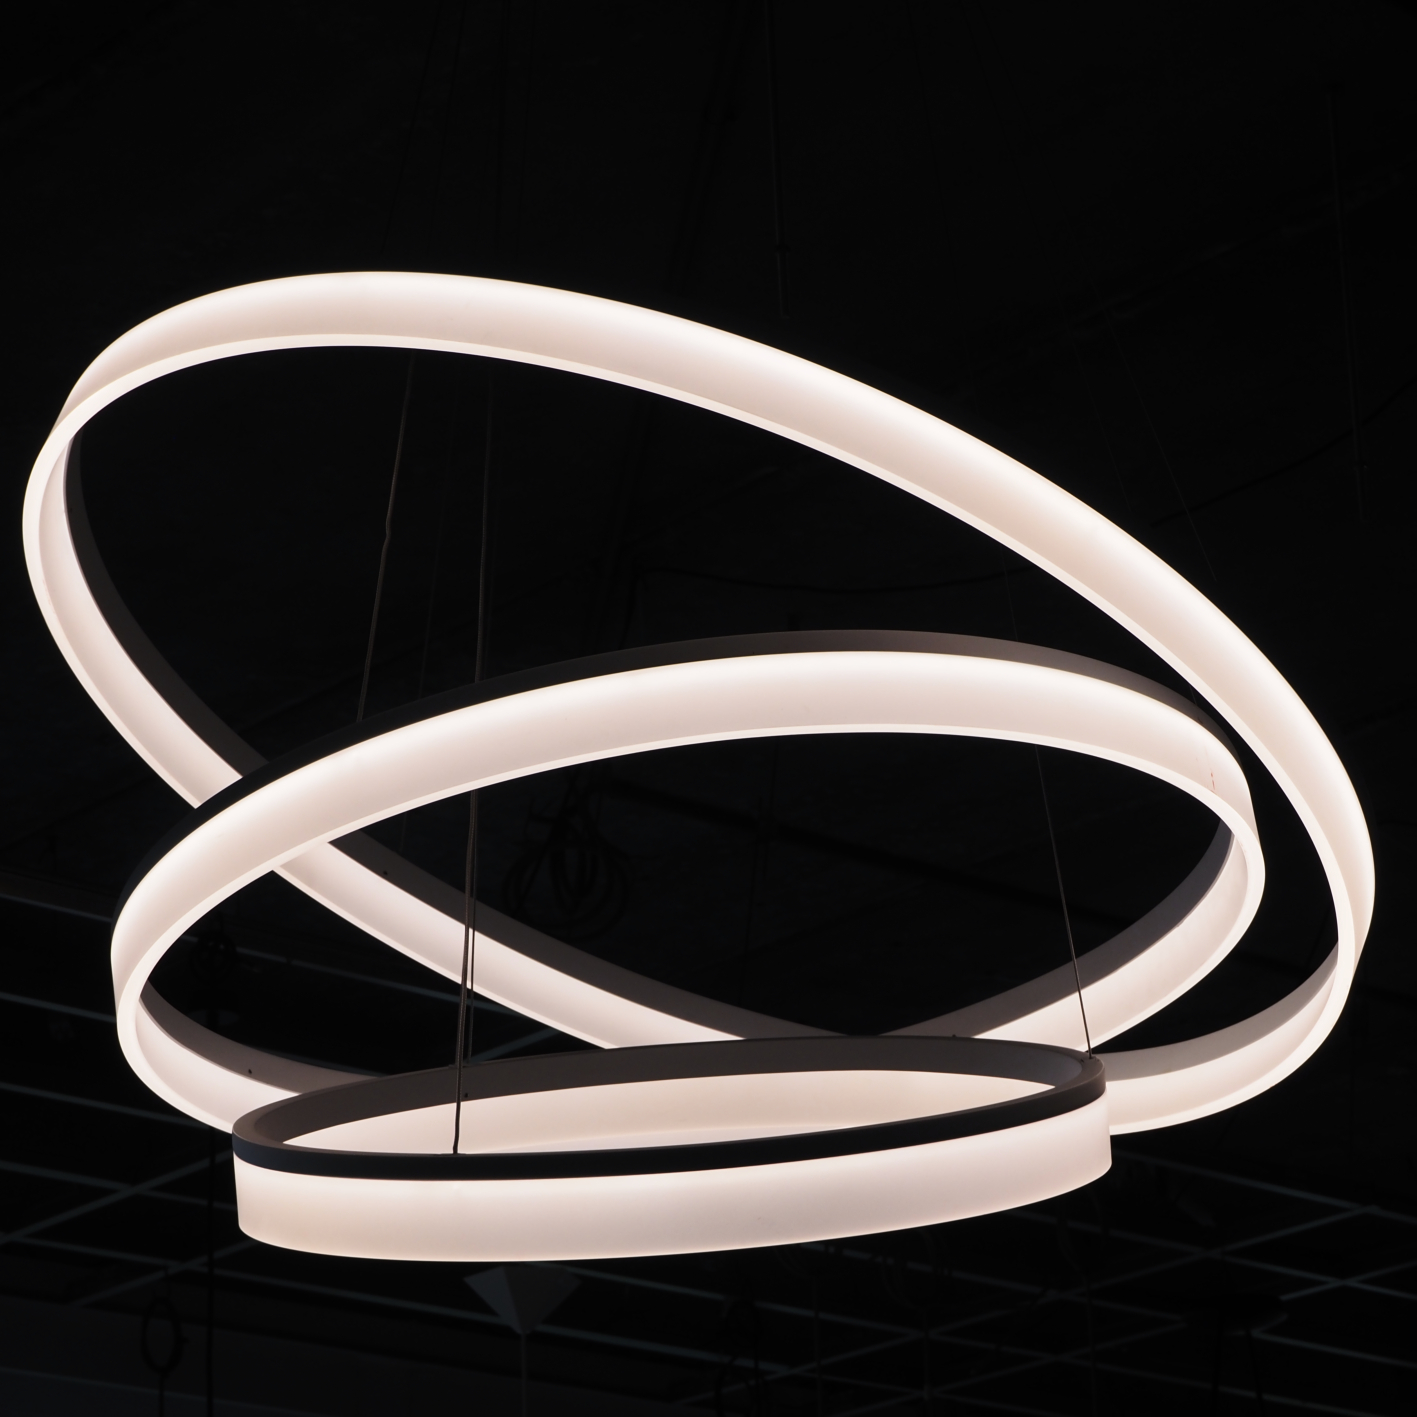 Hanging light 'Circ 3' by Josep Patsí for Leds C4